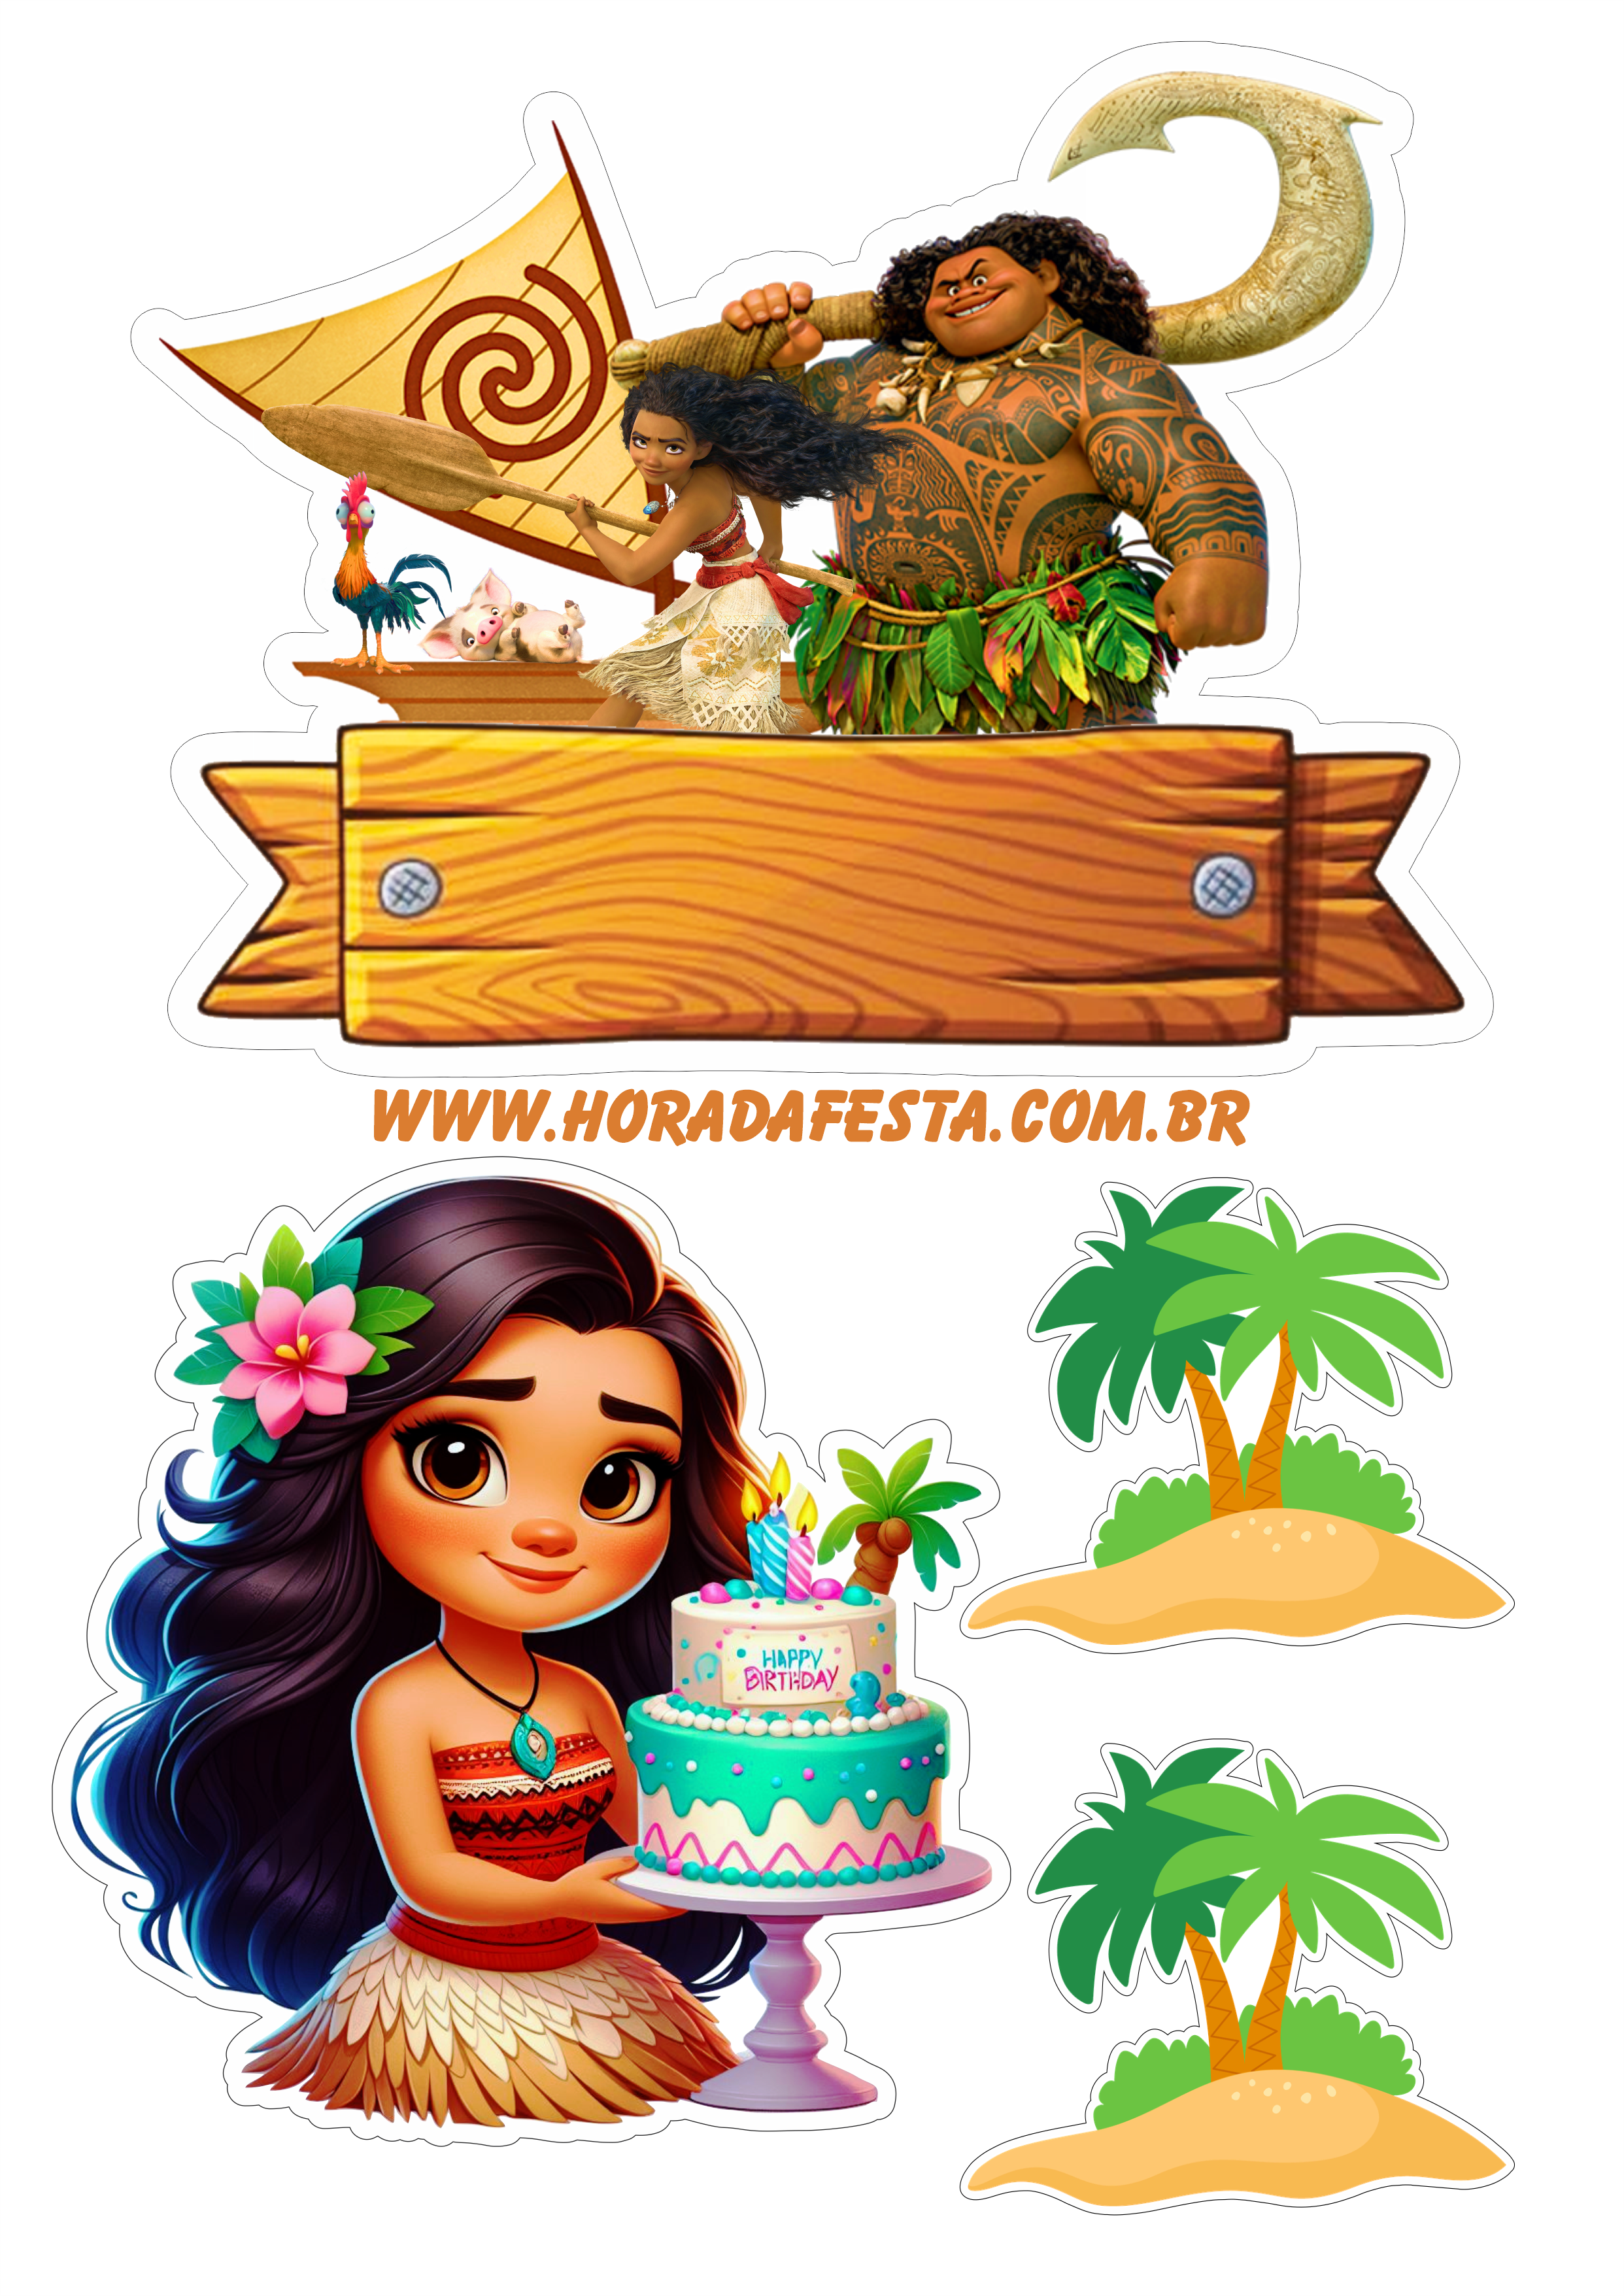 Aniversário infantil topo de bolo Moana pronto para imprimir coqueiro Maui png